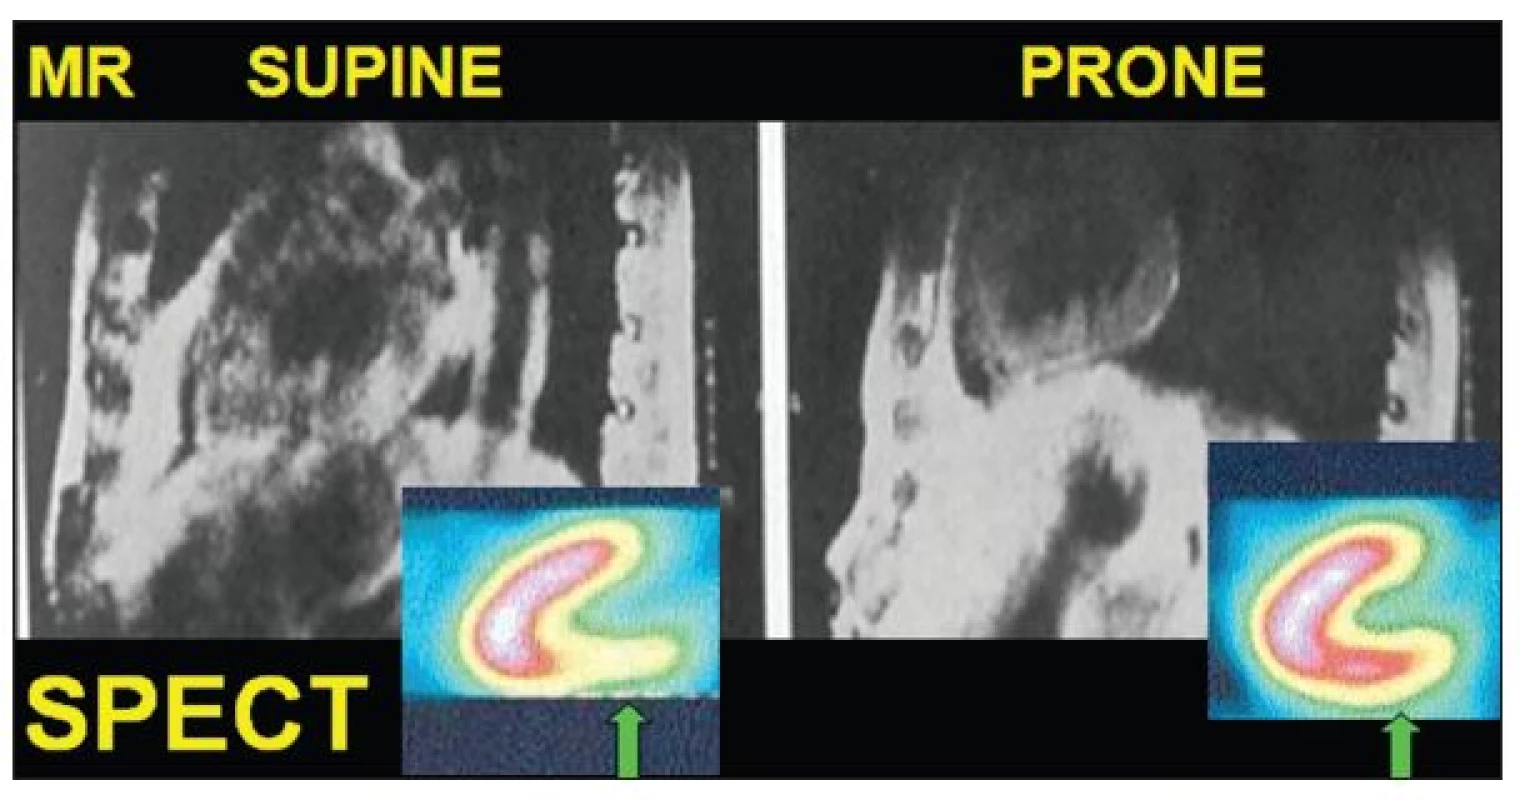 Změna polohy srdce patrná při zobrazení magnetickou rezonancí (MR) při porovnání supine 
a prone pozice. Arteficiálně snížené vychytávání impulsů v oblasti spodní stěny při SPECT zobrazení
 v supine pozici není patrné v prone pozici.